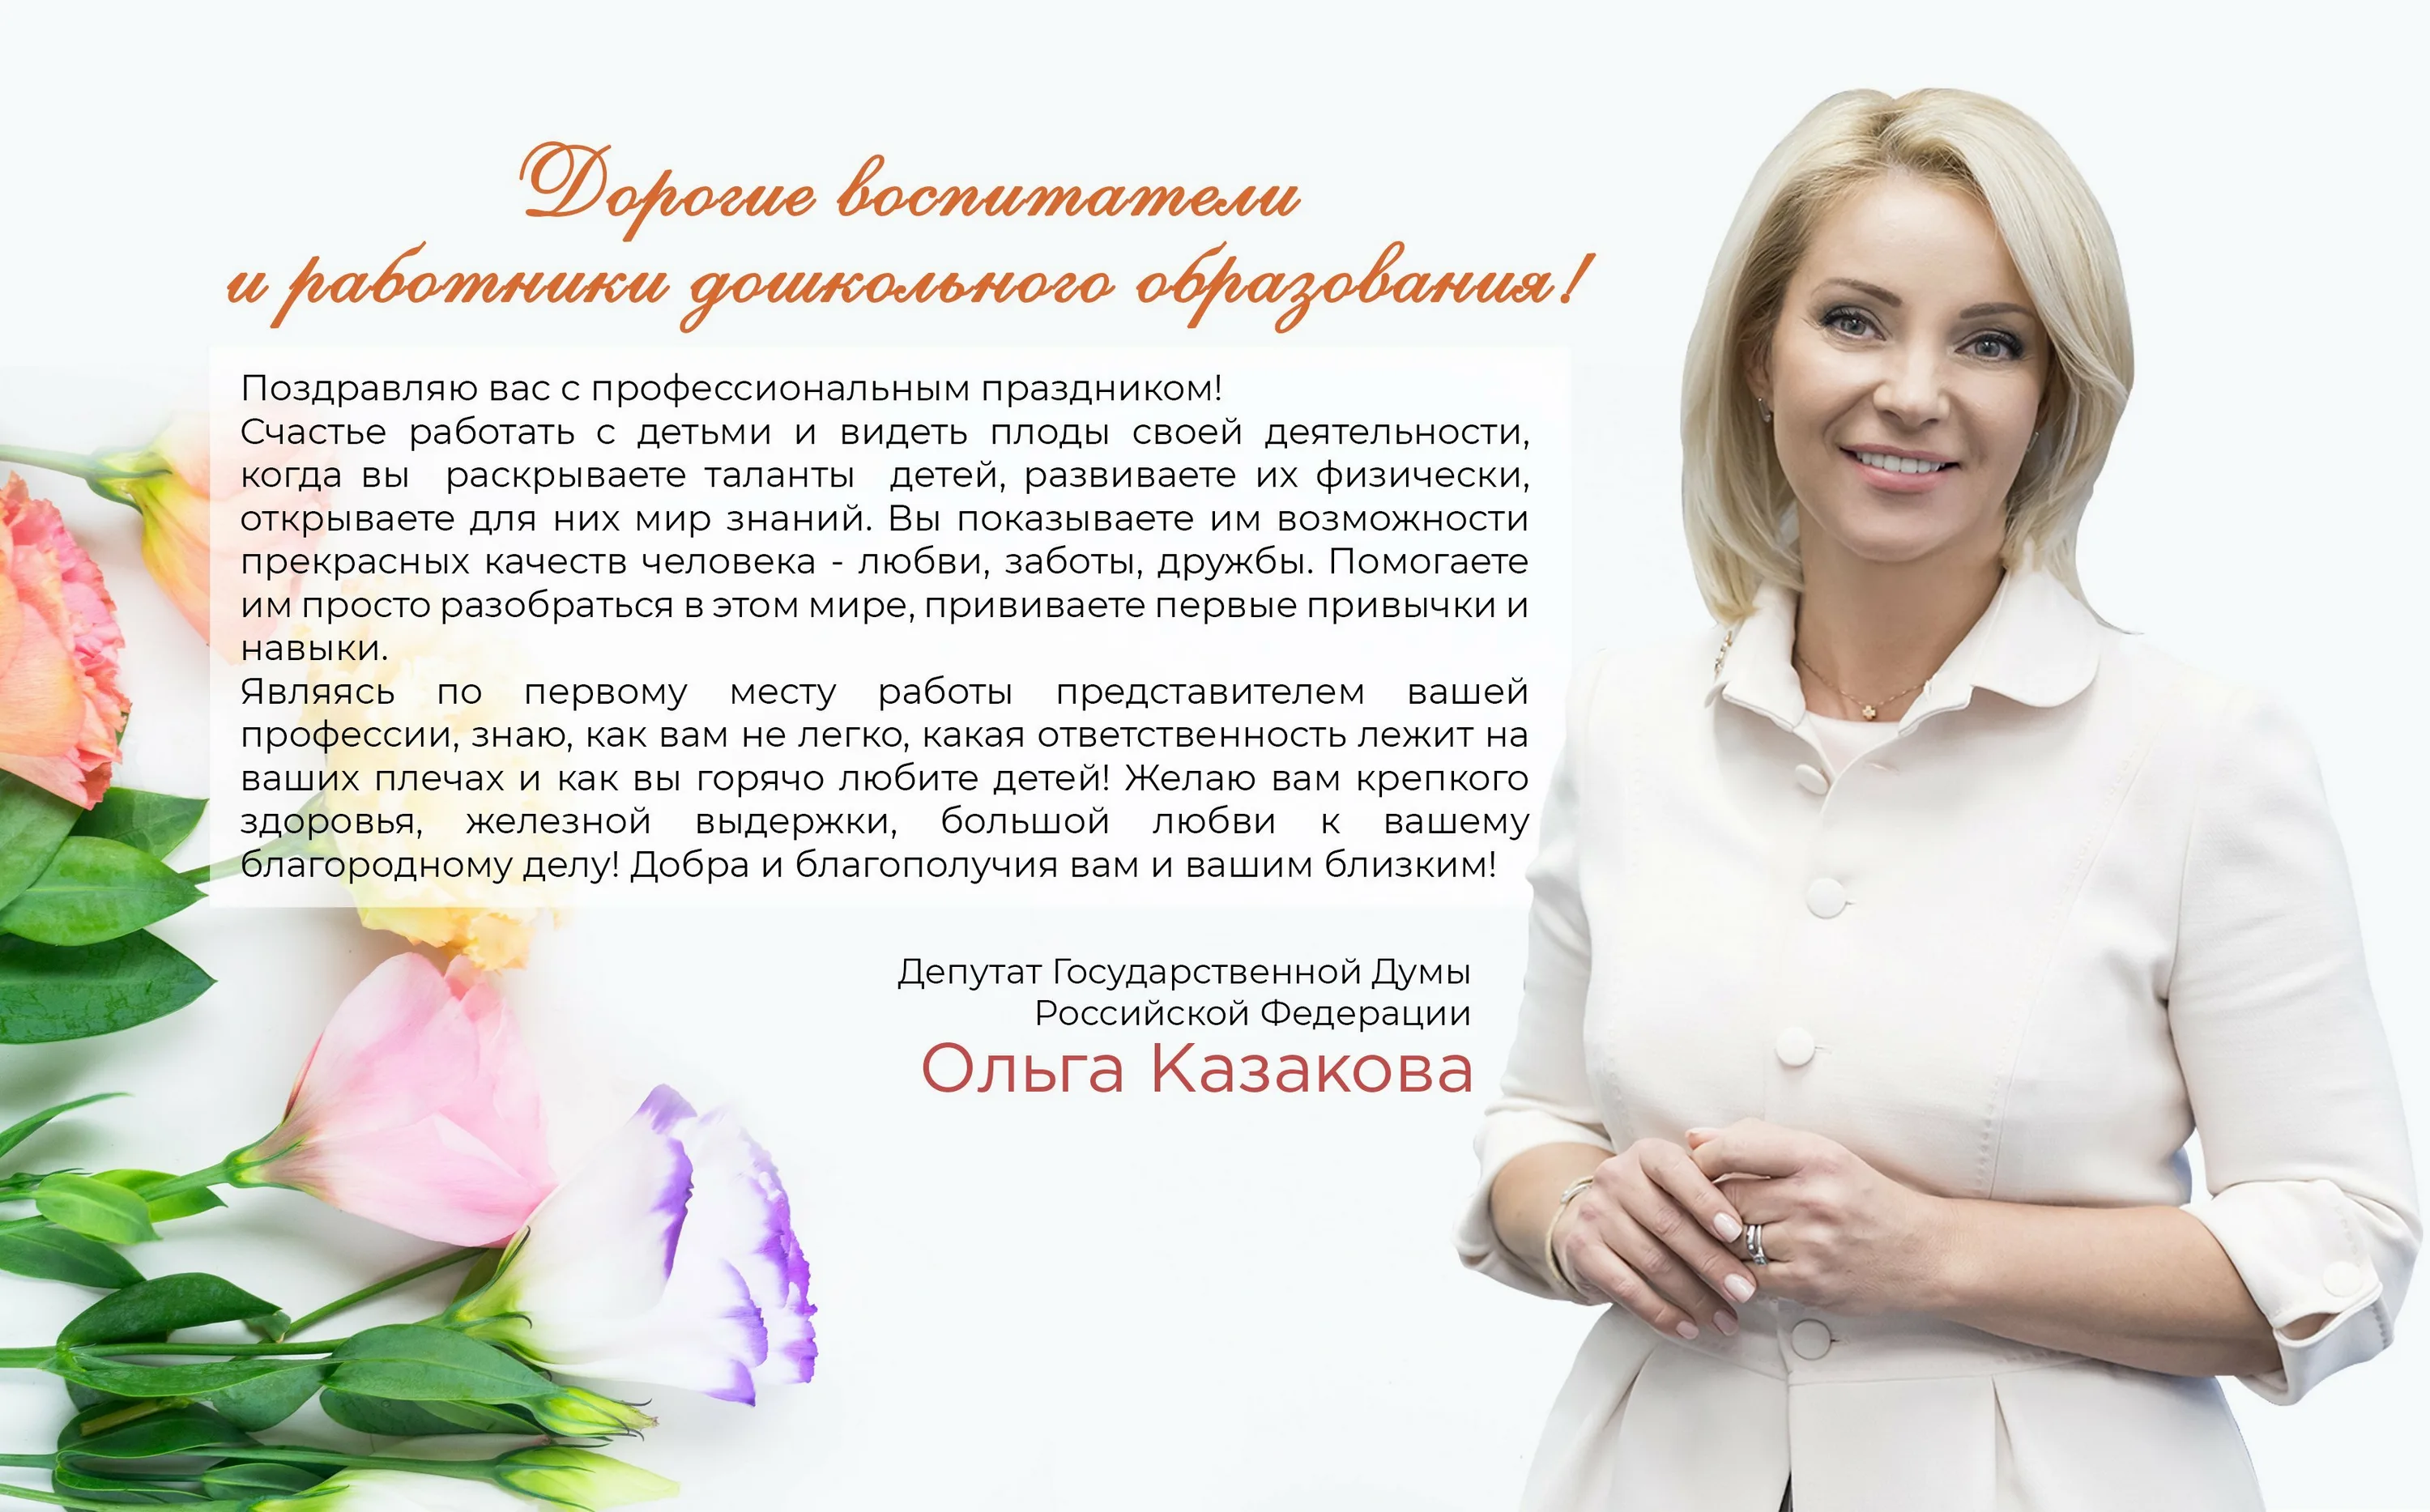 Фото Поздравление с днем рождения депутату Государственной Думы #19